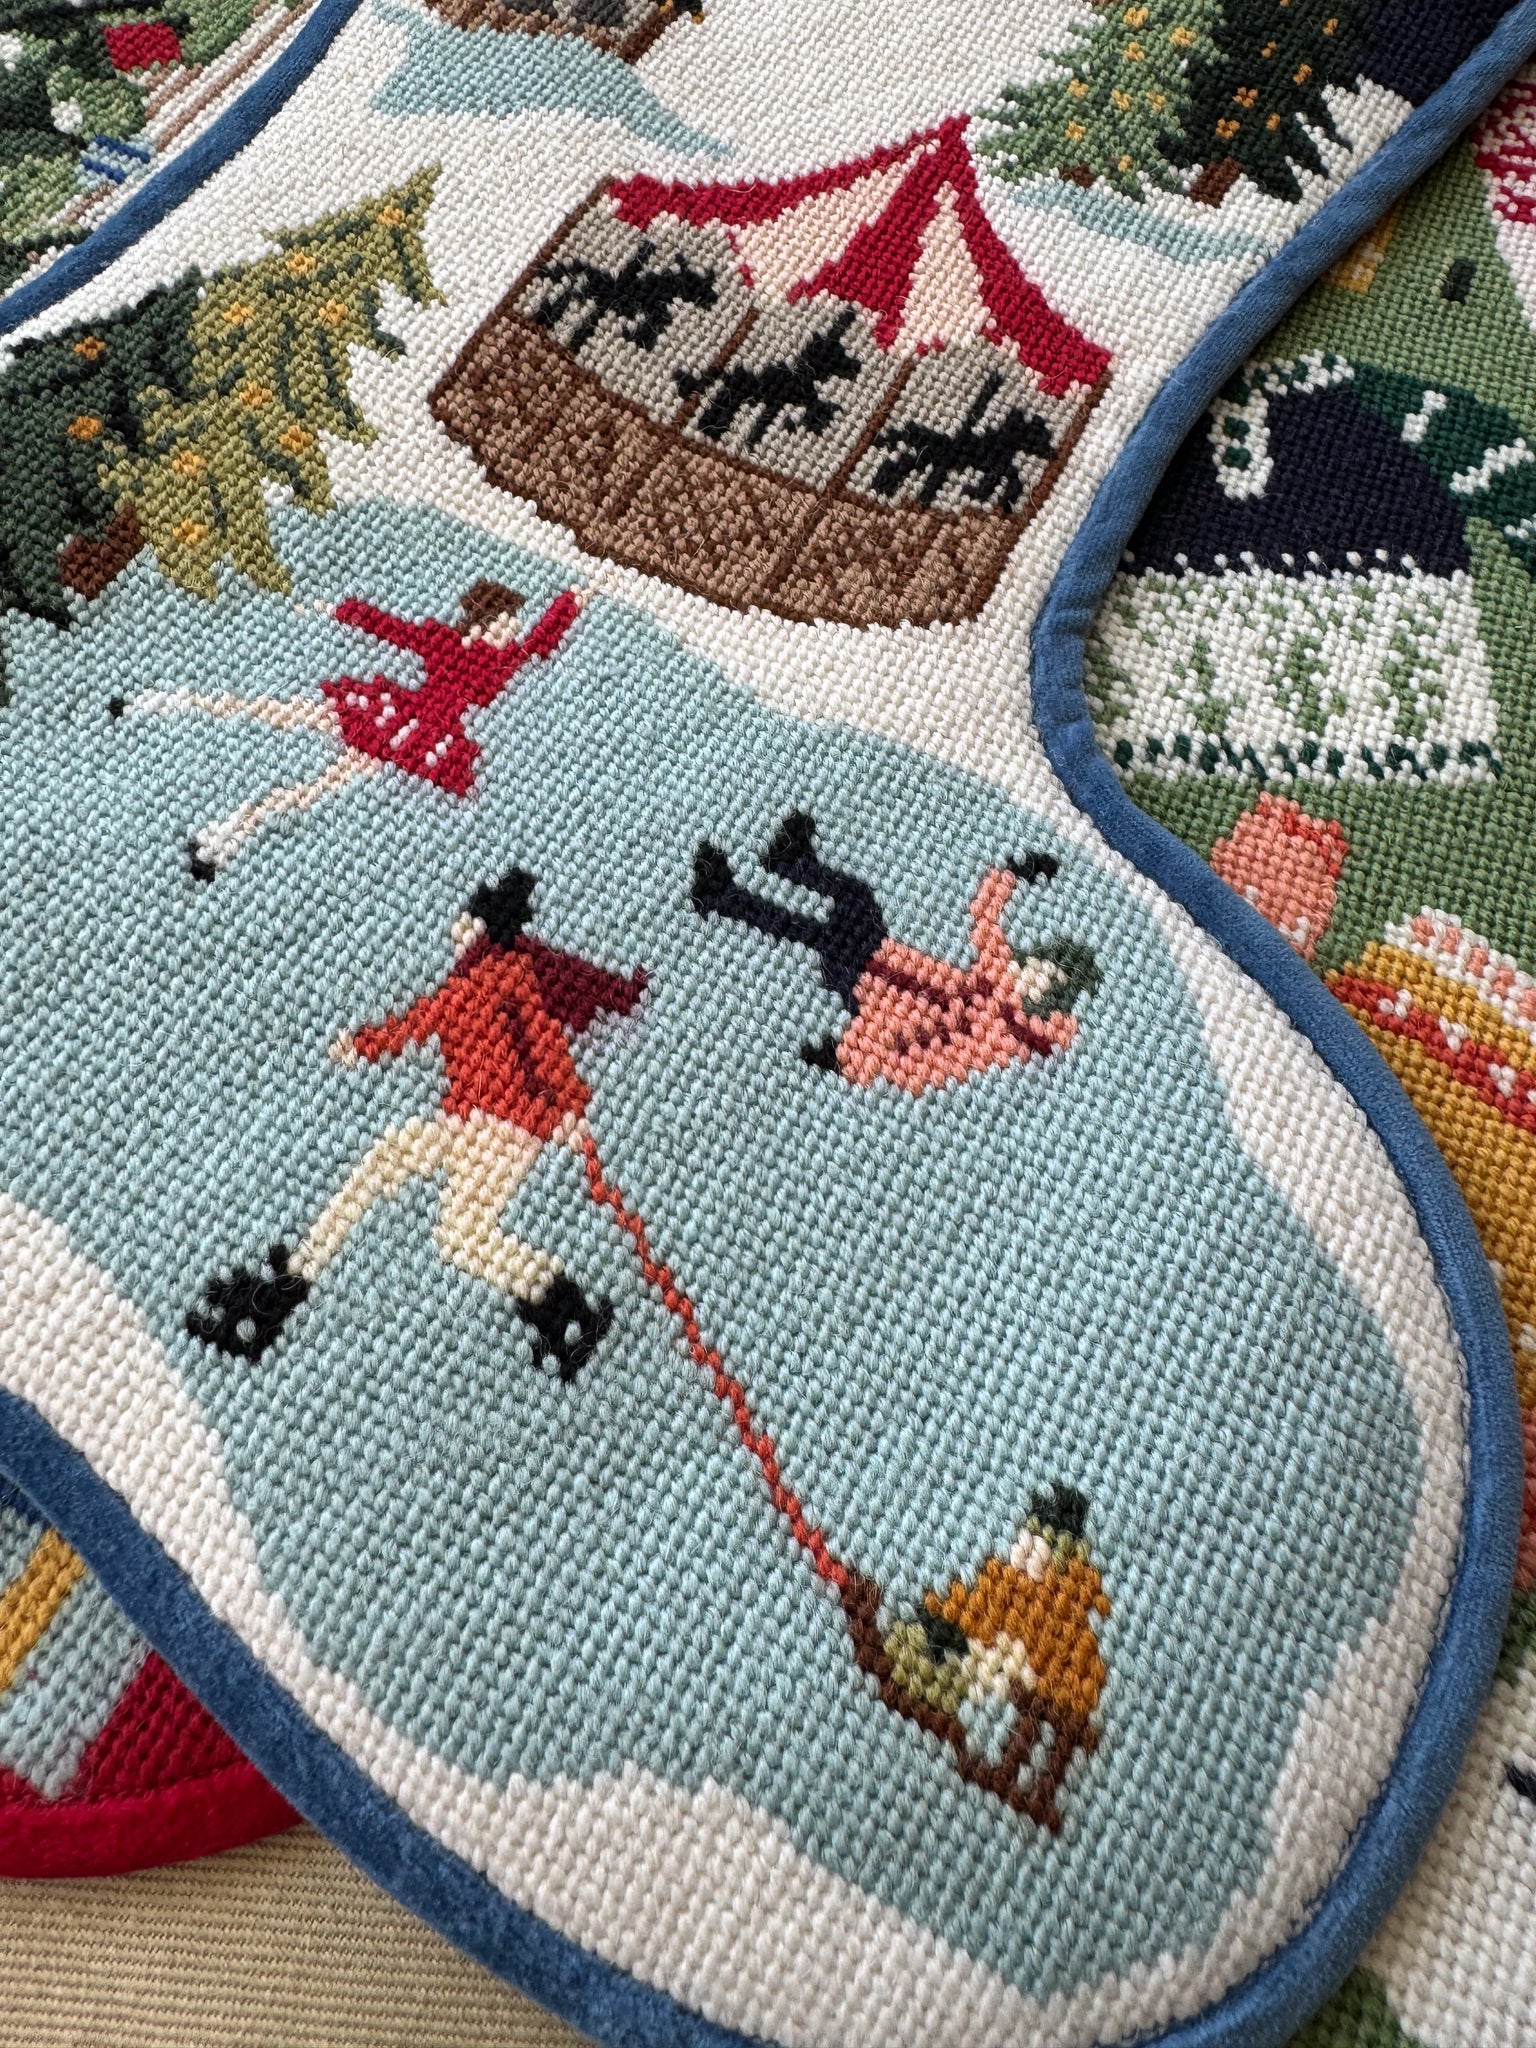 Stitched Stocking - Christmas Market